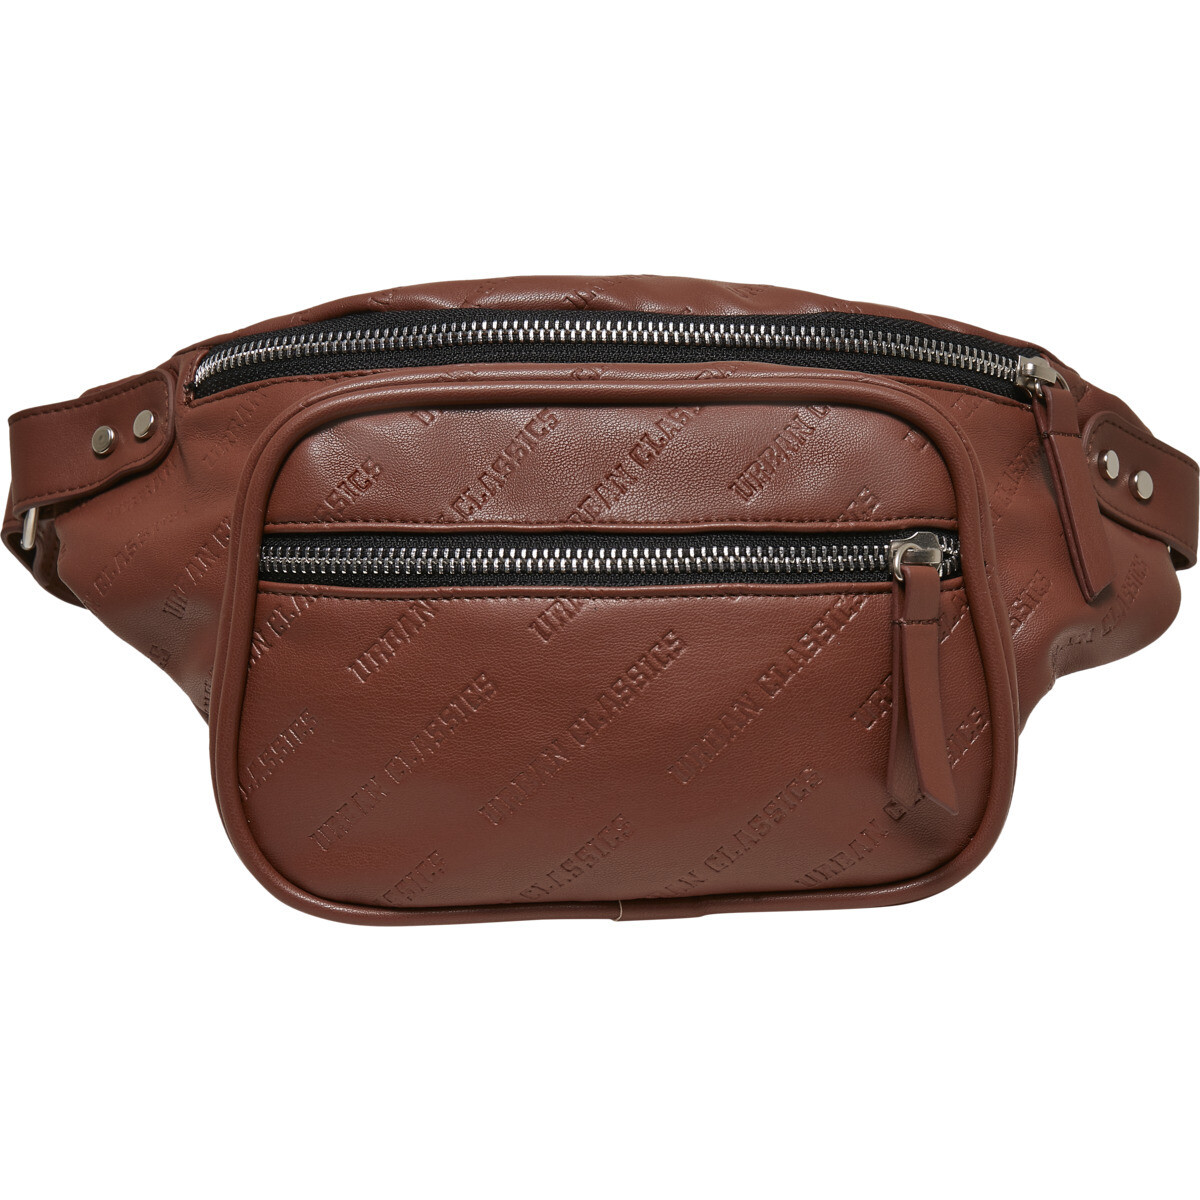 Imitation Leather Shoulder Bag - Braun